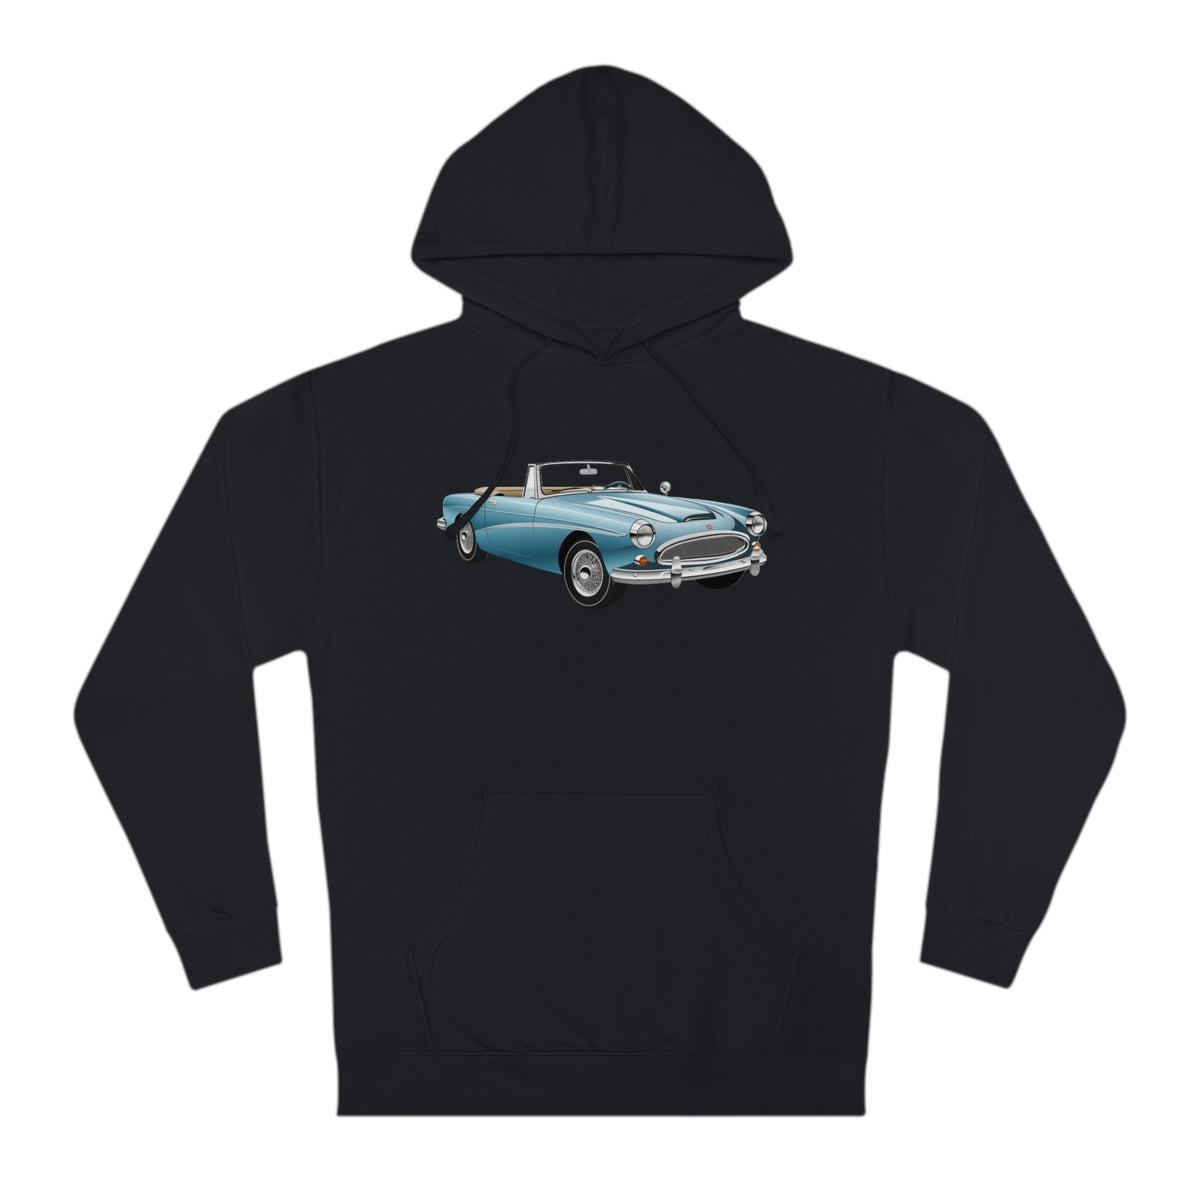 "Azure Roadster" Classic Vintage Car Enthusiast Hoodie/Hooded Sweatshirt